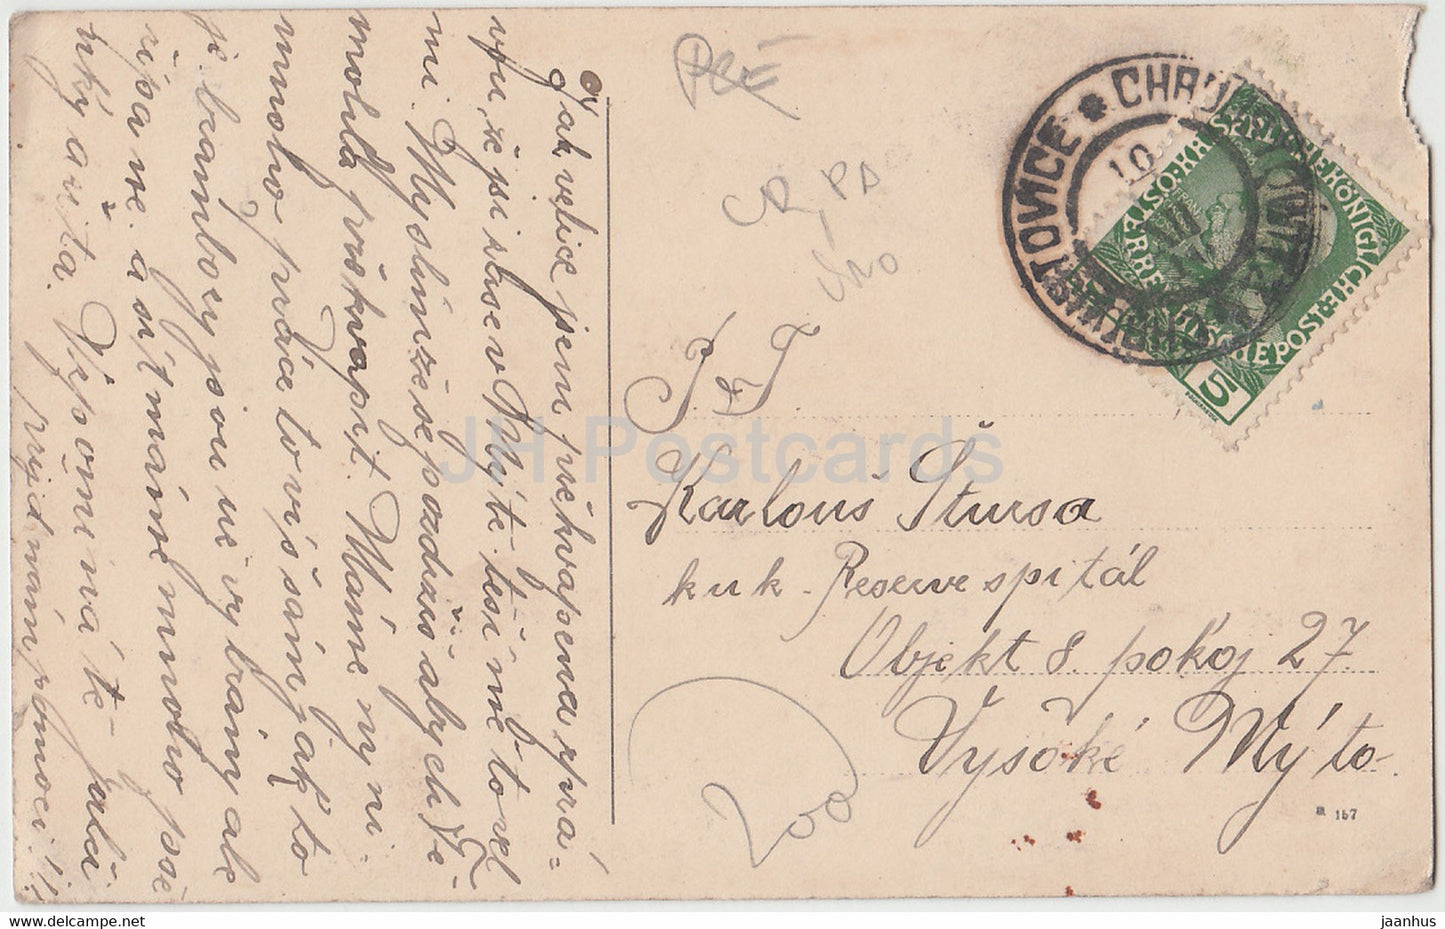 Ostrov - carte postale ancienne - République tchèque - occasion